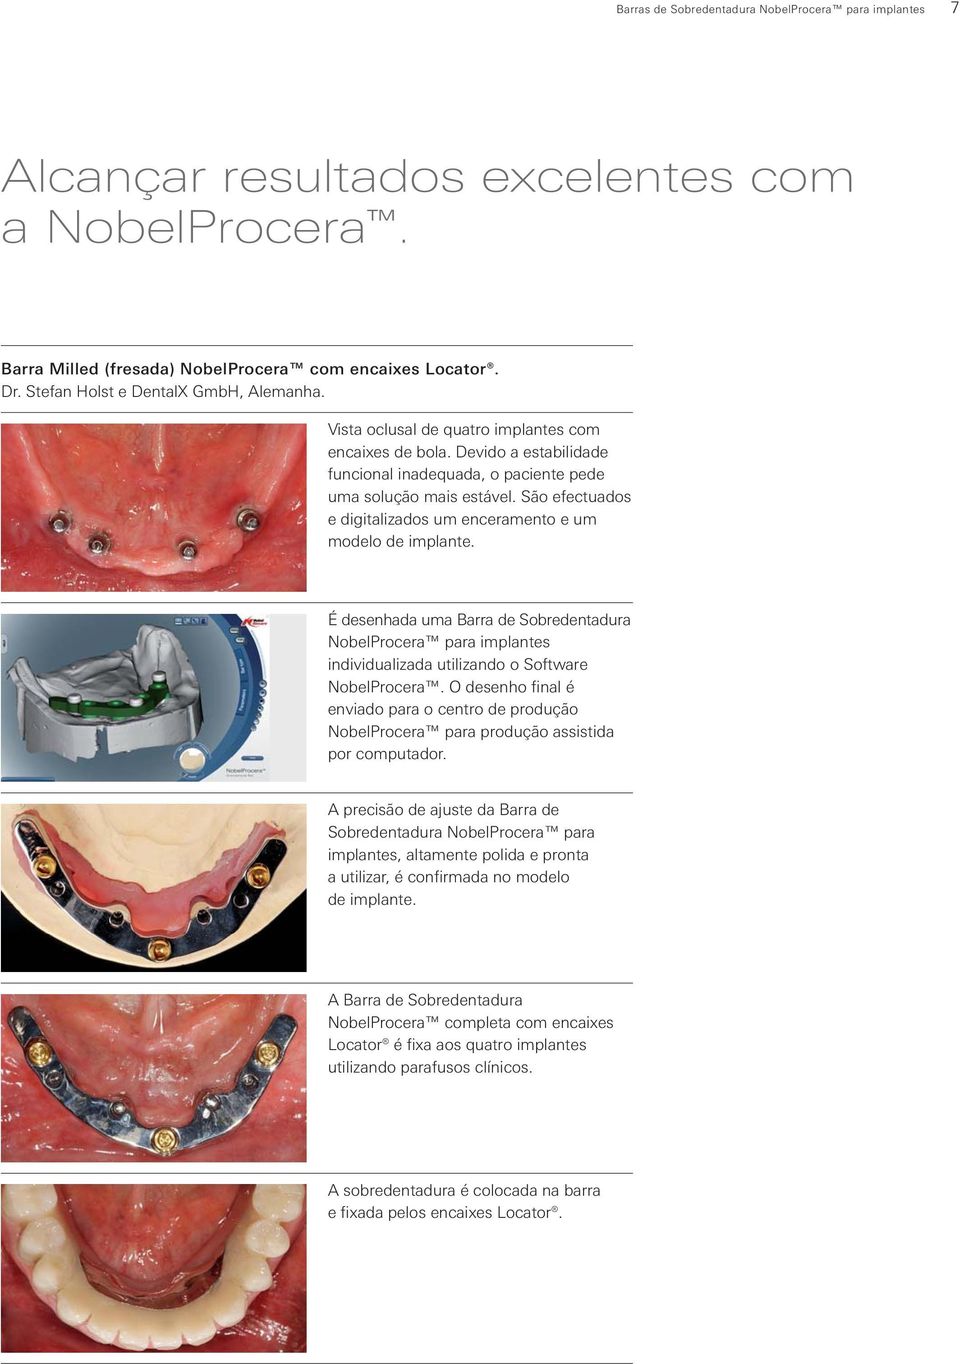 São efectuados e digitalizados um enceramento e um modelo de implante. É desenhada uma Barra de Sobredentadura NobelProcera para implantes individualizada utilizando o Software NobelProcera.